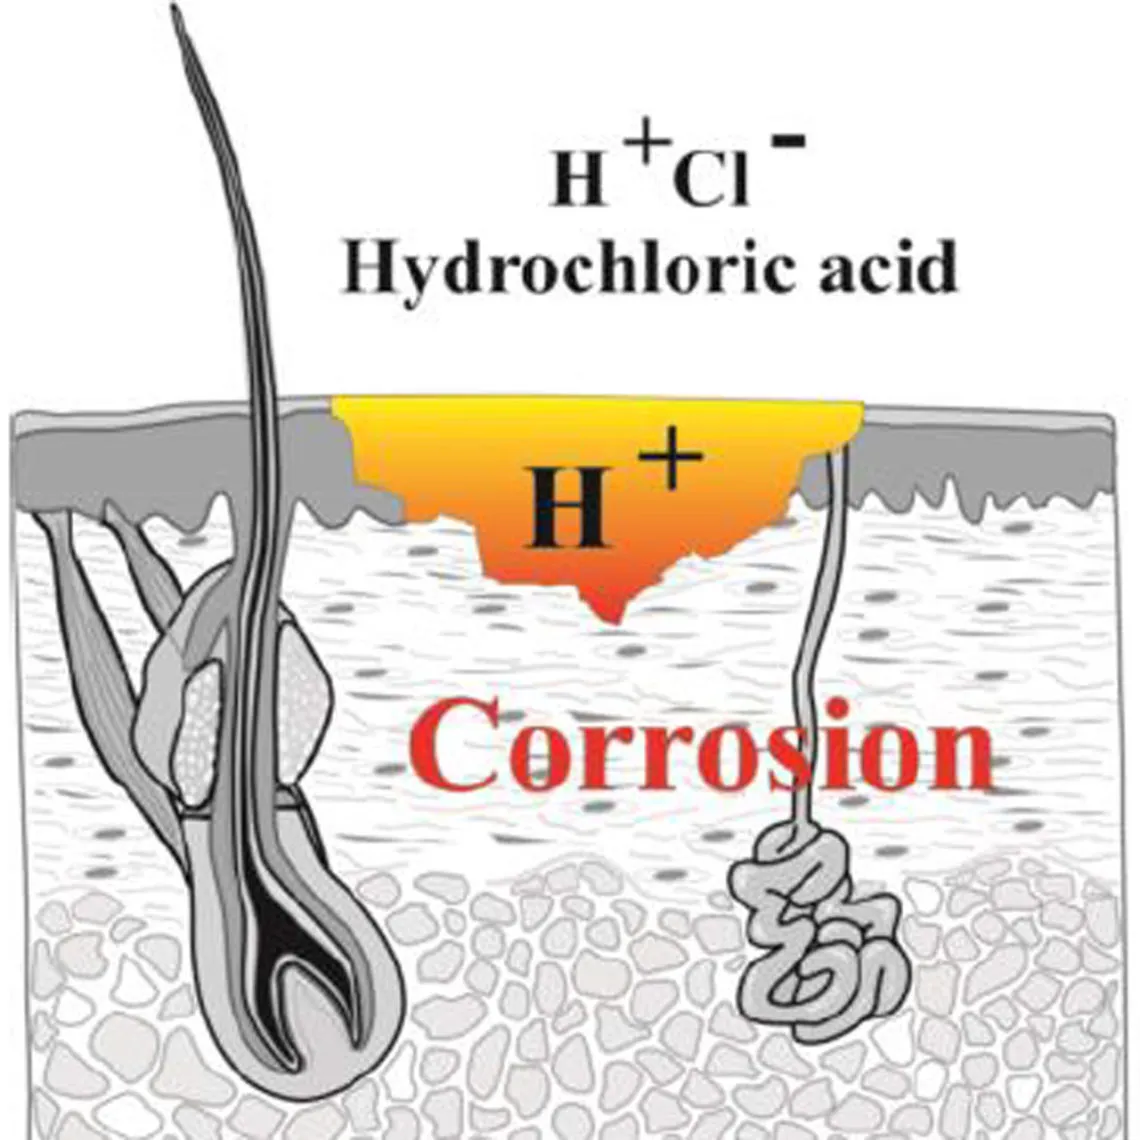 Diagramm der Auswirkungen von Salzsäure auf den Organismus, der mit ihr in Berührung kommt: Korrosion